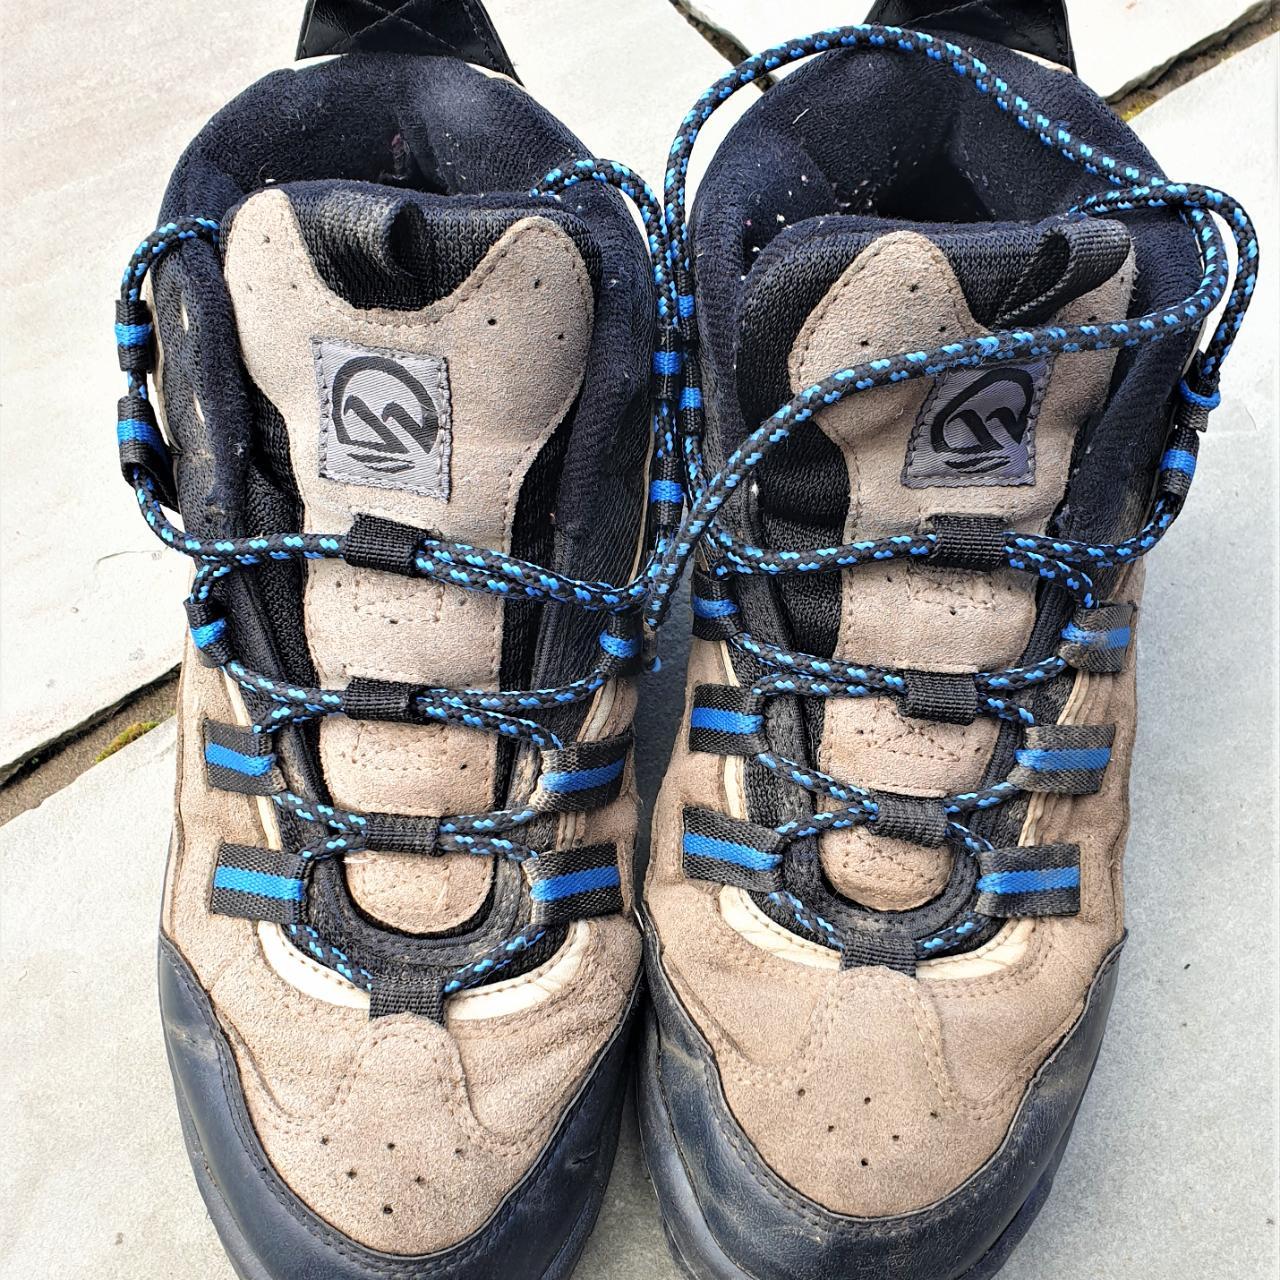 Hawkshead Walking Boots UK Size 10 Suede... - Depop